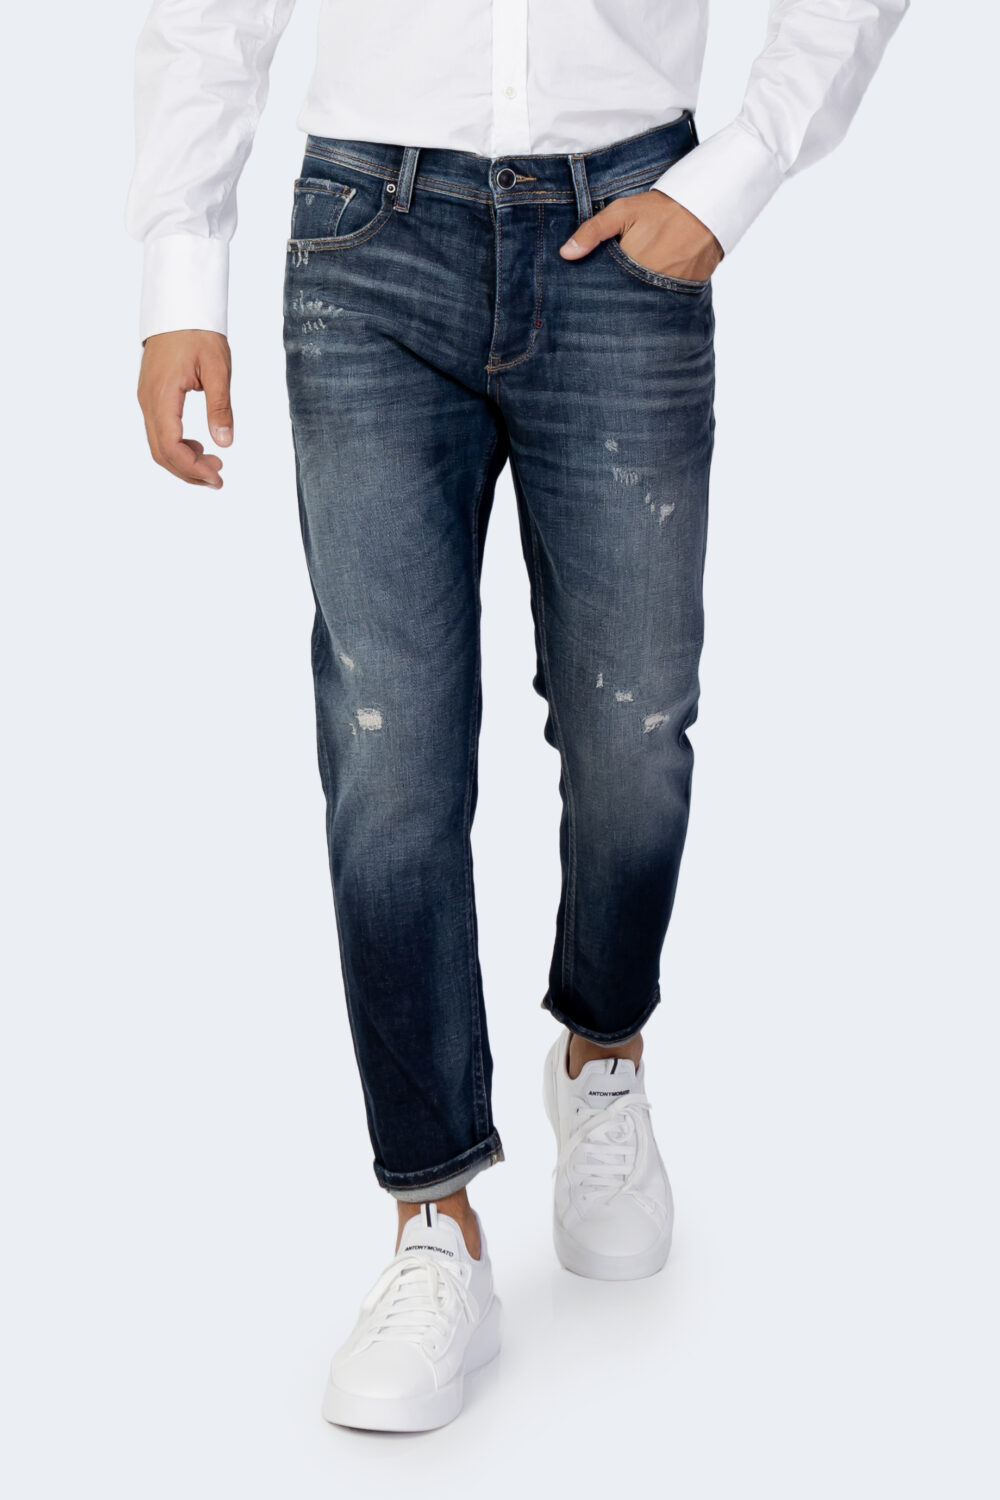 Jeans slim Antony Morato ARGON SLIM Blue Denim - Foto 1